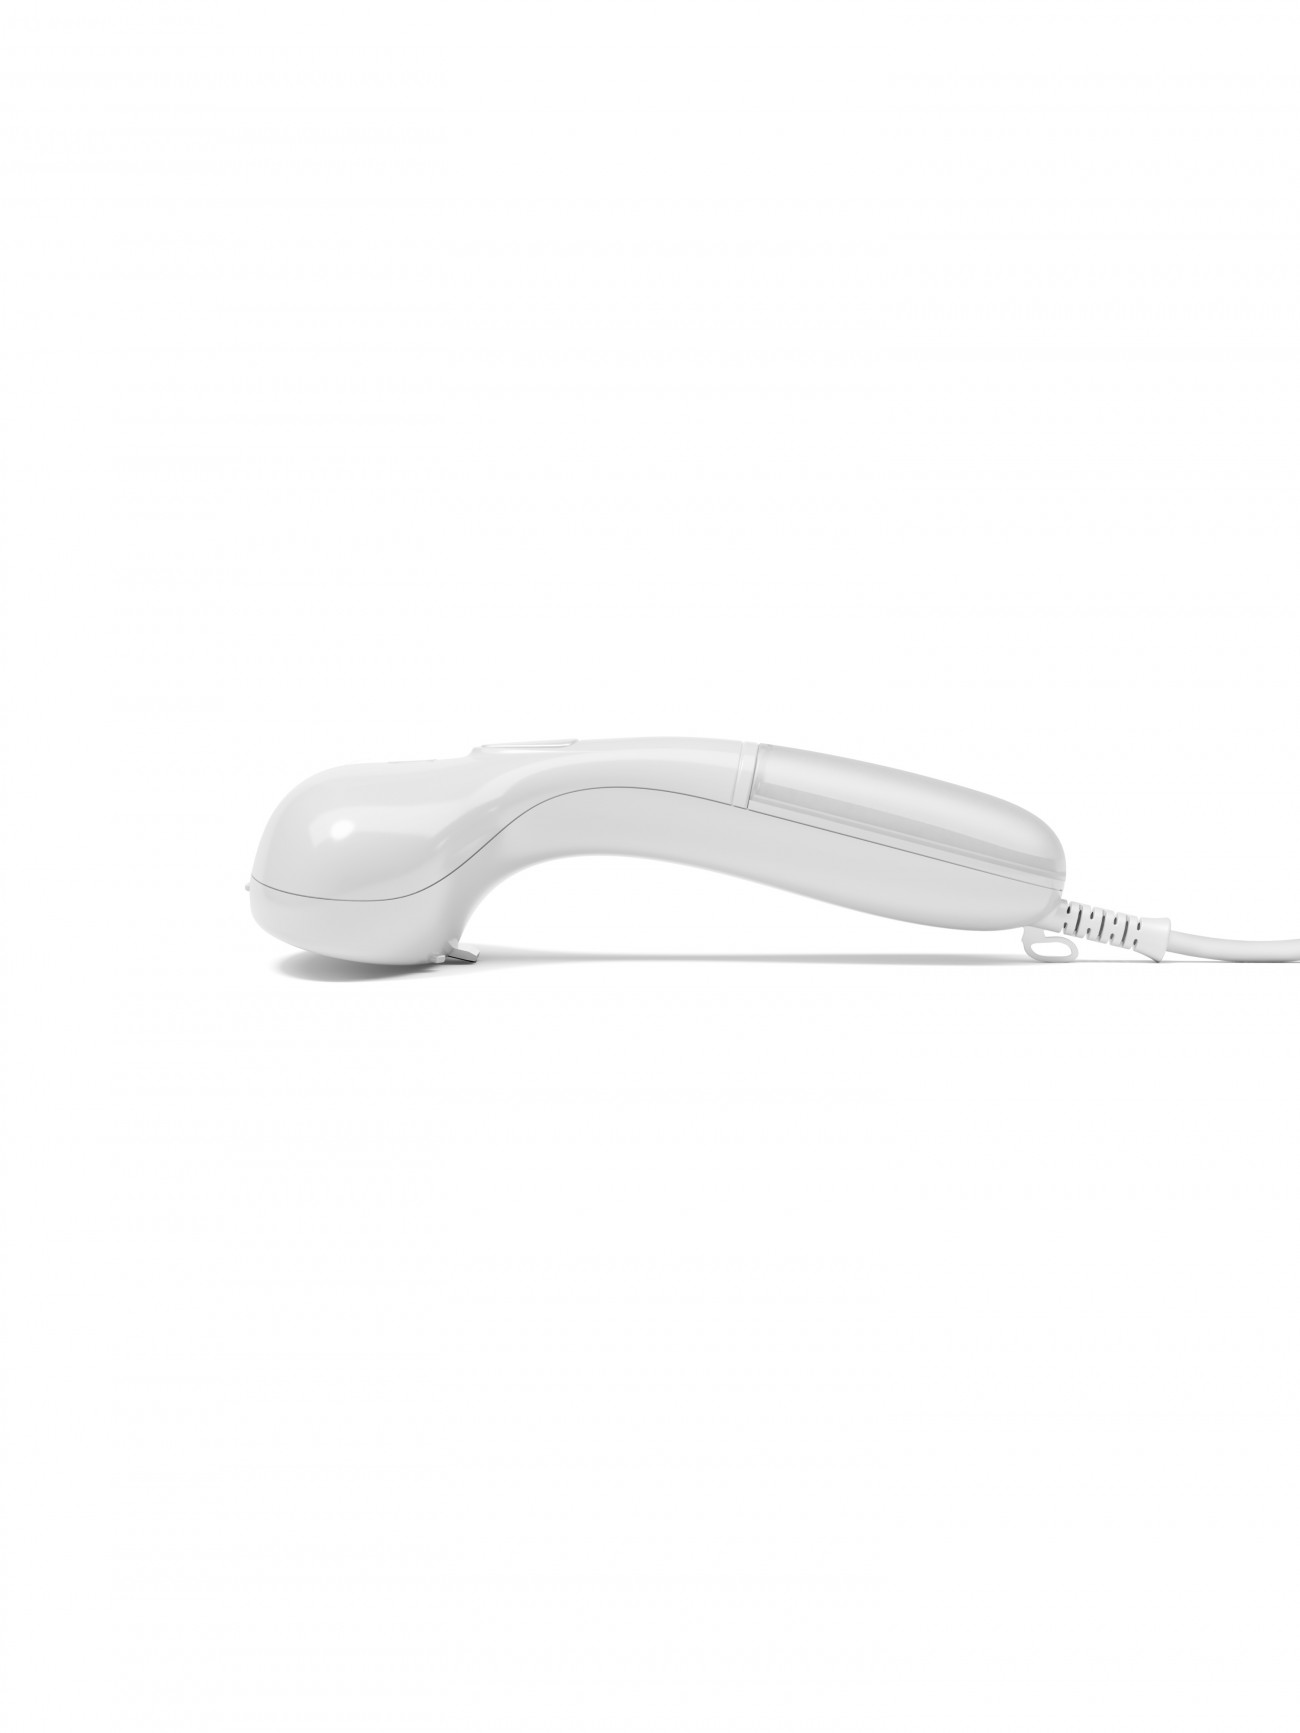 Cirrus 1 Handheld Steamer – White